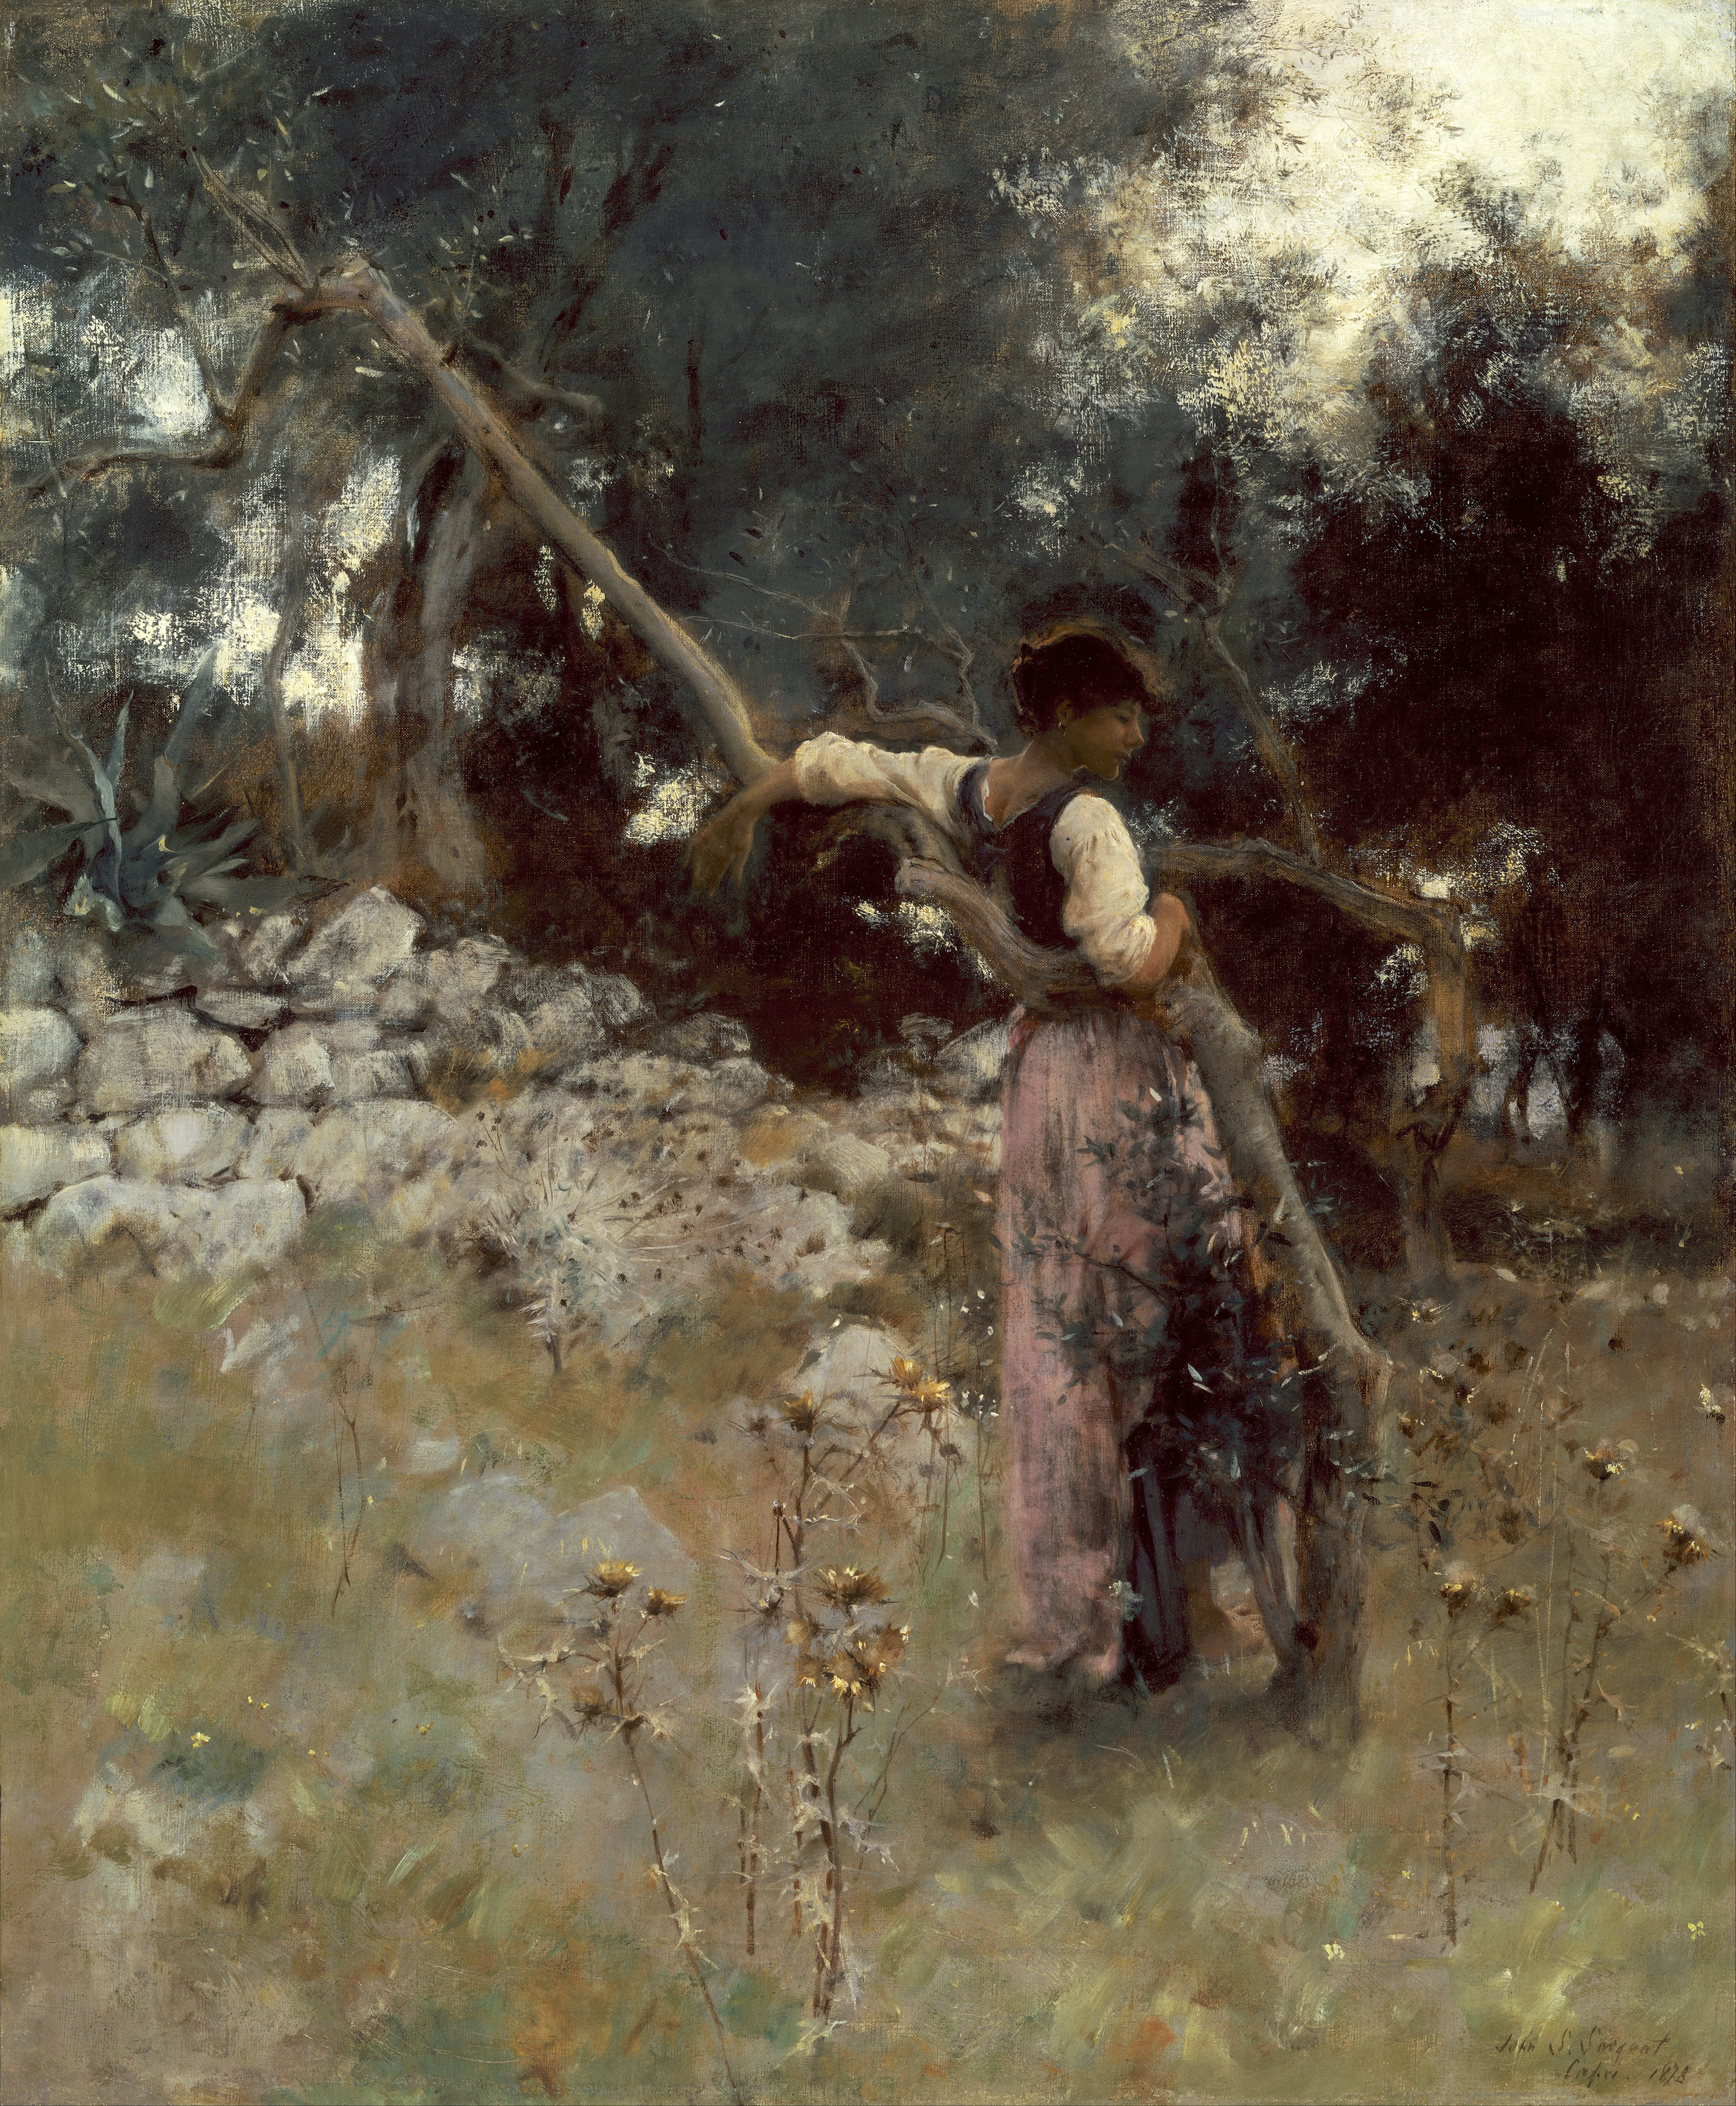 كابريَّة by John Singer Sargent - 1878 - 631.8 x 768.3 مم 